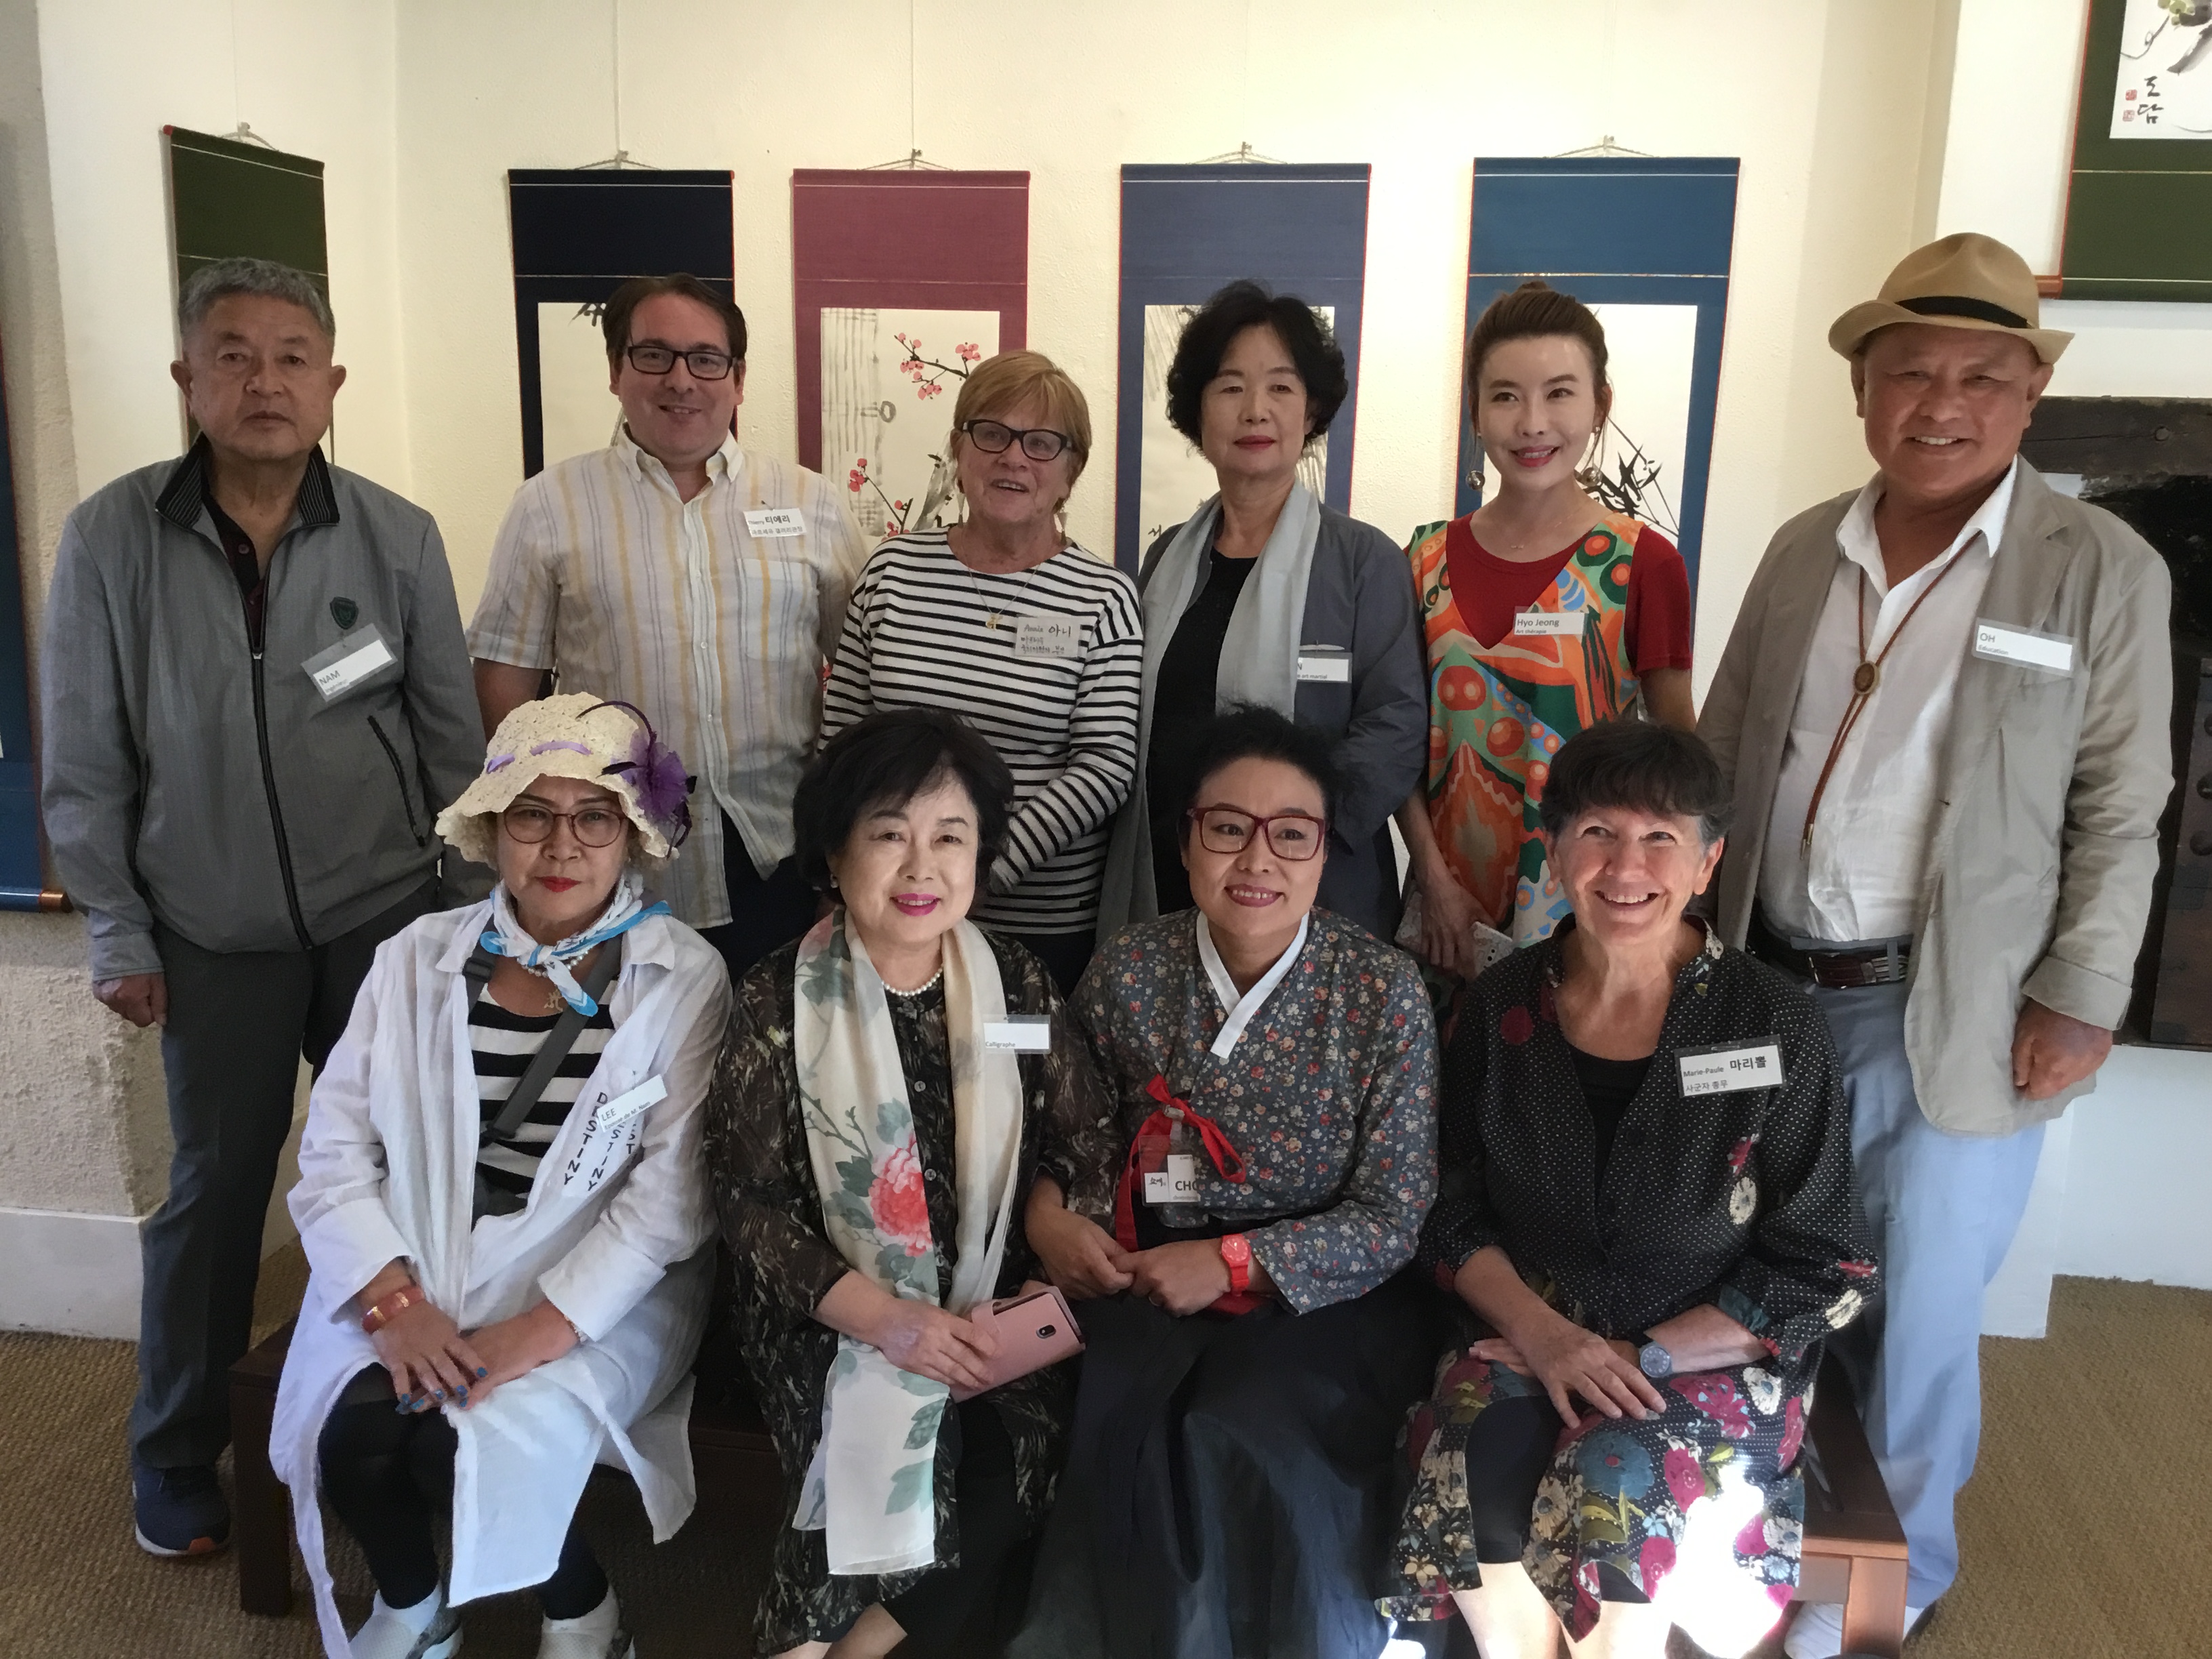 Rencontre à Nevers entre des Artistes Coréens – L’association Sagunja* d’Orleans & l’Atelier des Arts de Marseille